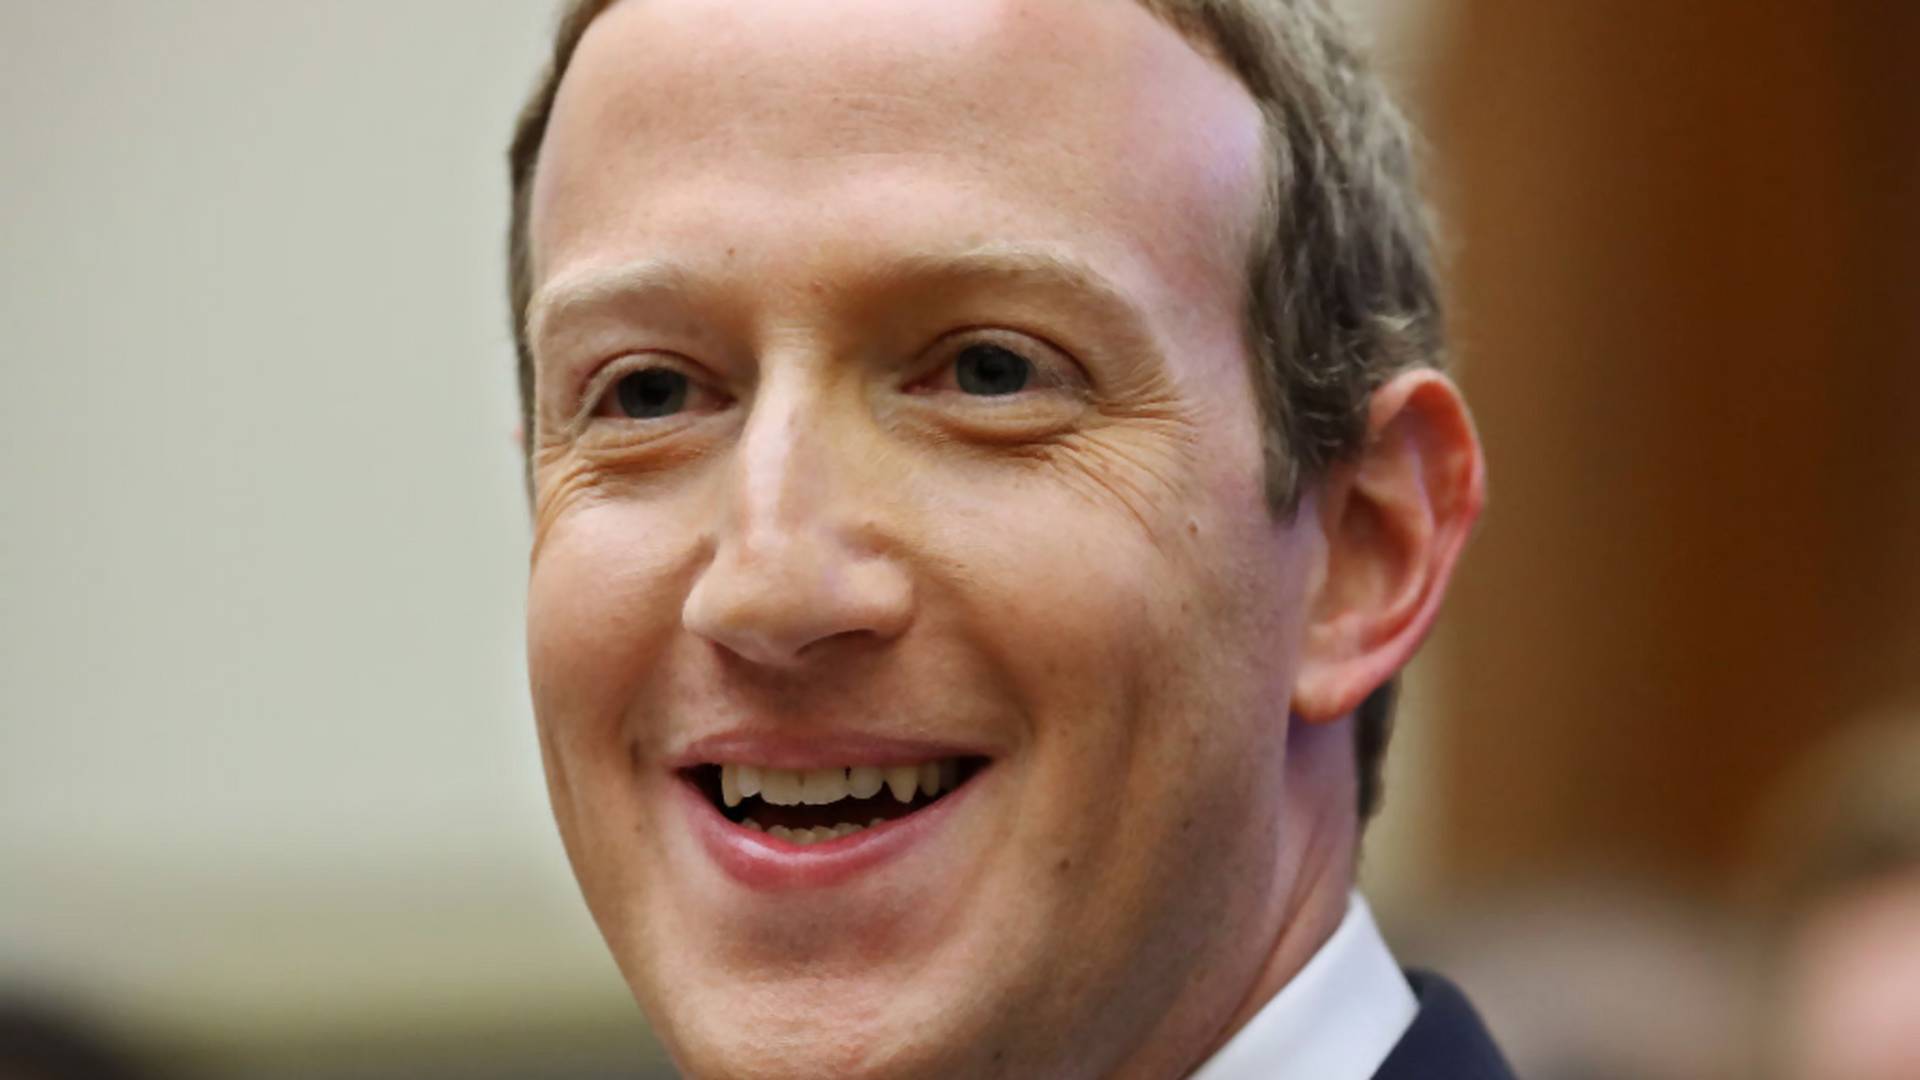 Titkosított csevegőt használ Zuckerberg a Facebook üzenetküldői helyett